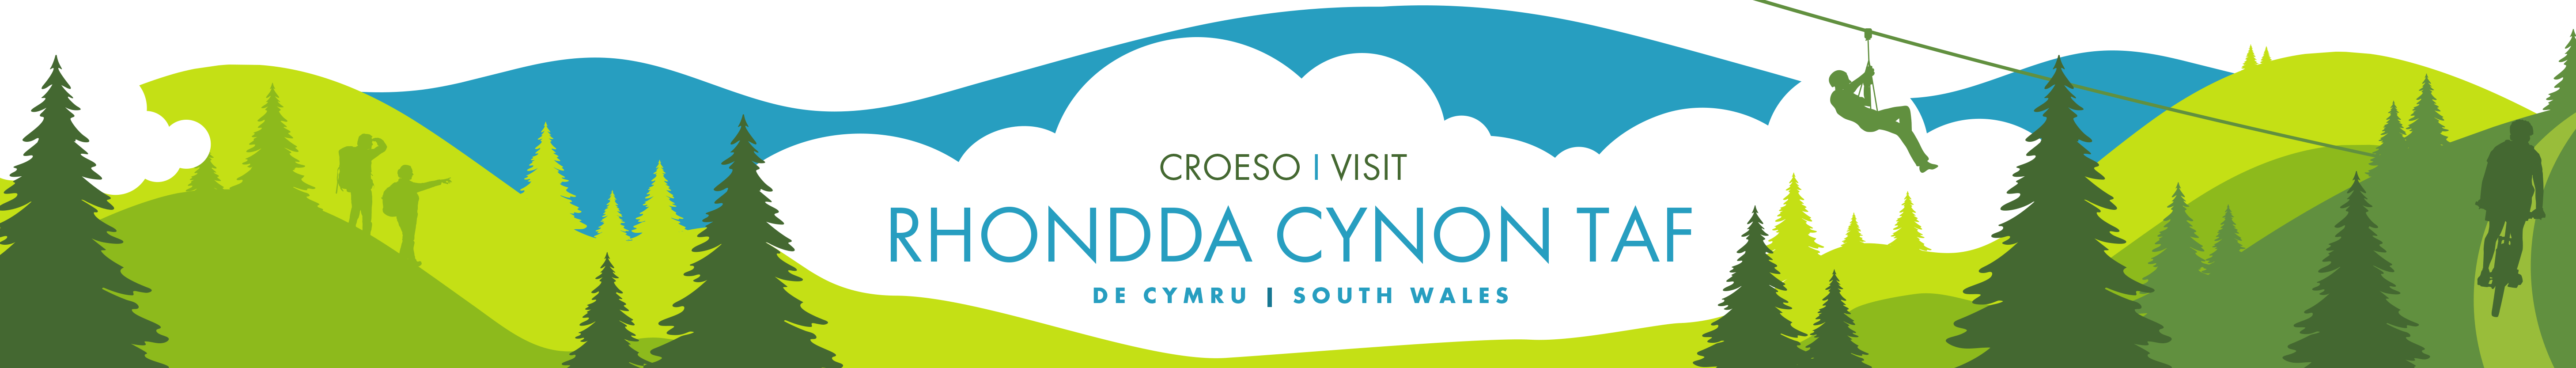 Visit Rhondda Cynon Taf, South Wales - Croeso